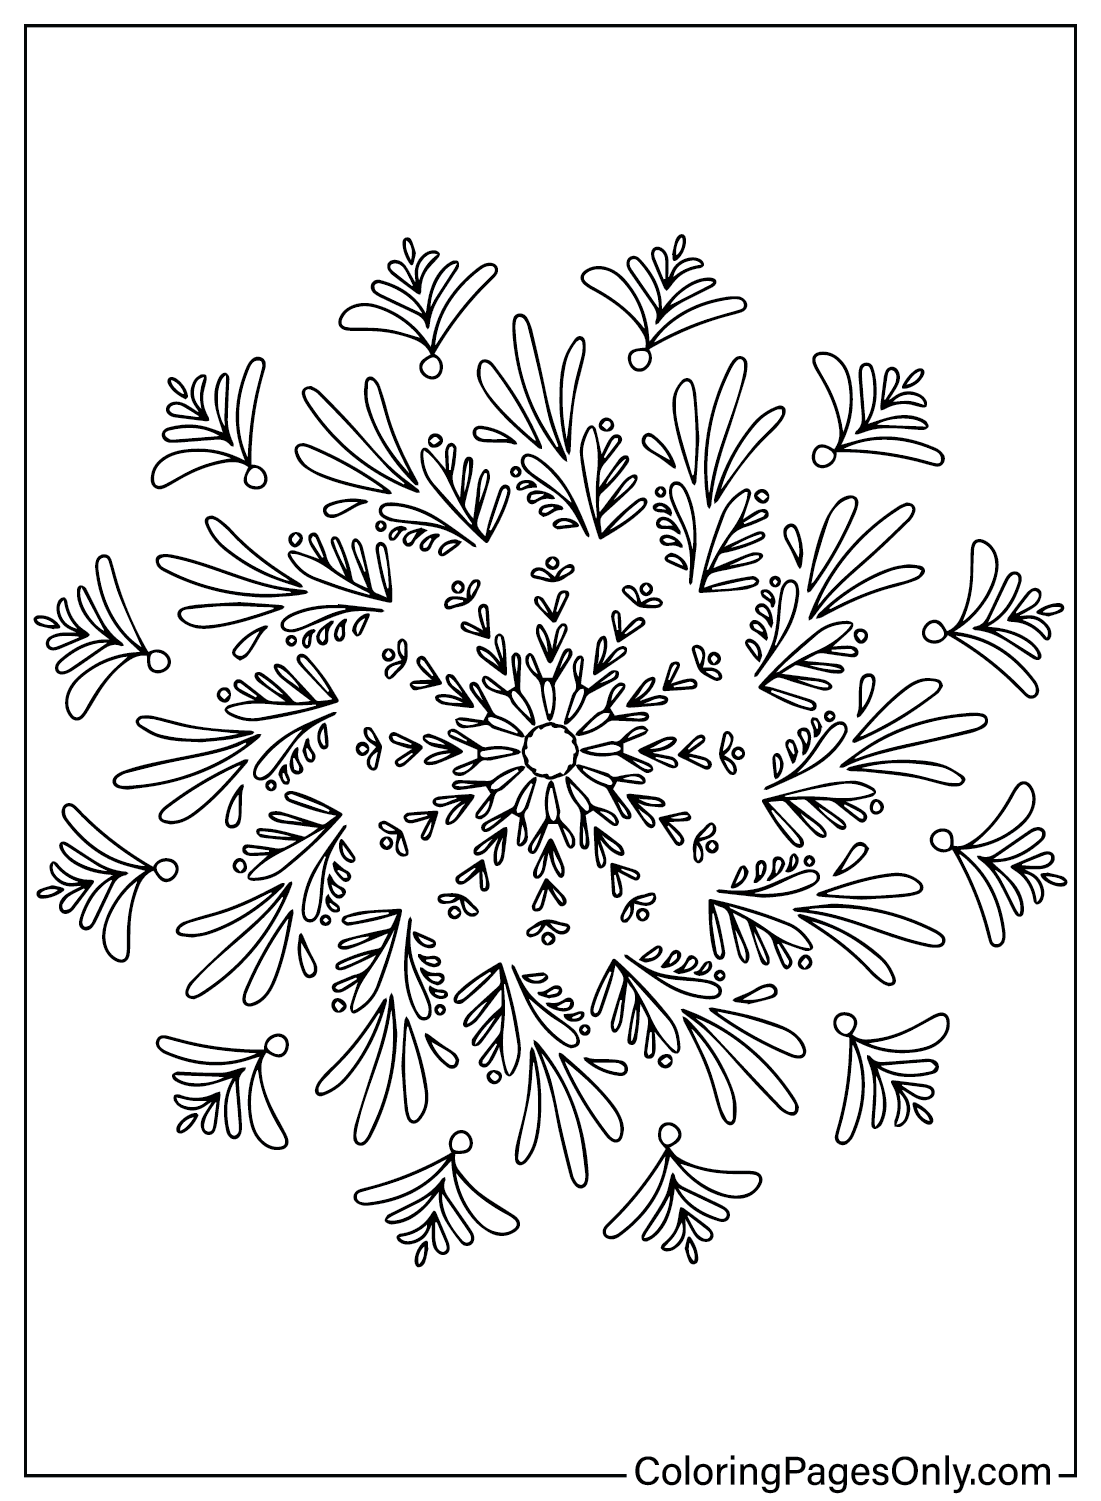 Kleurplaat van een sneeuwvlok uit Sneeuwvlok